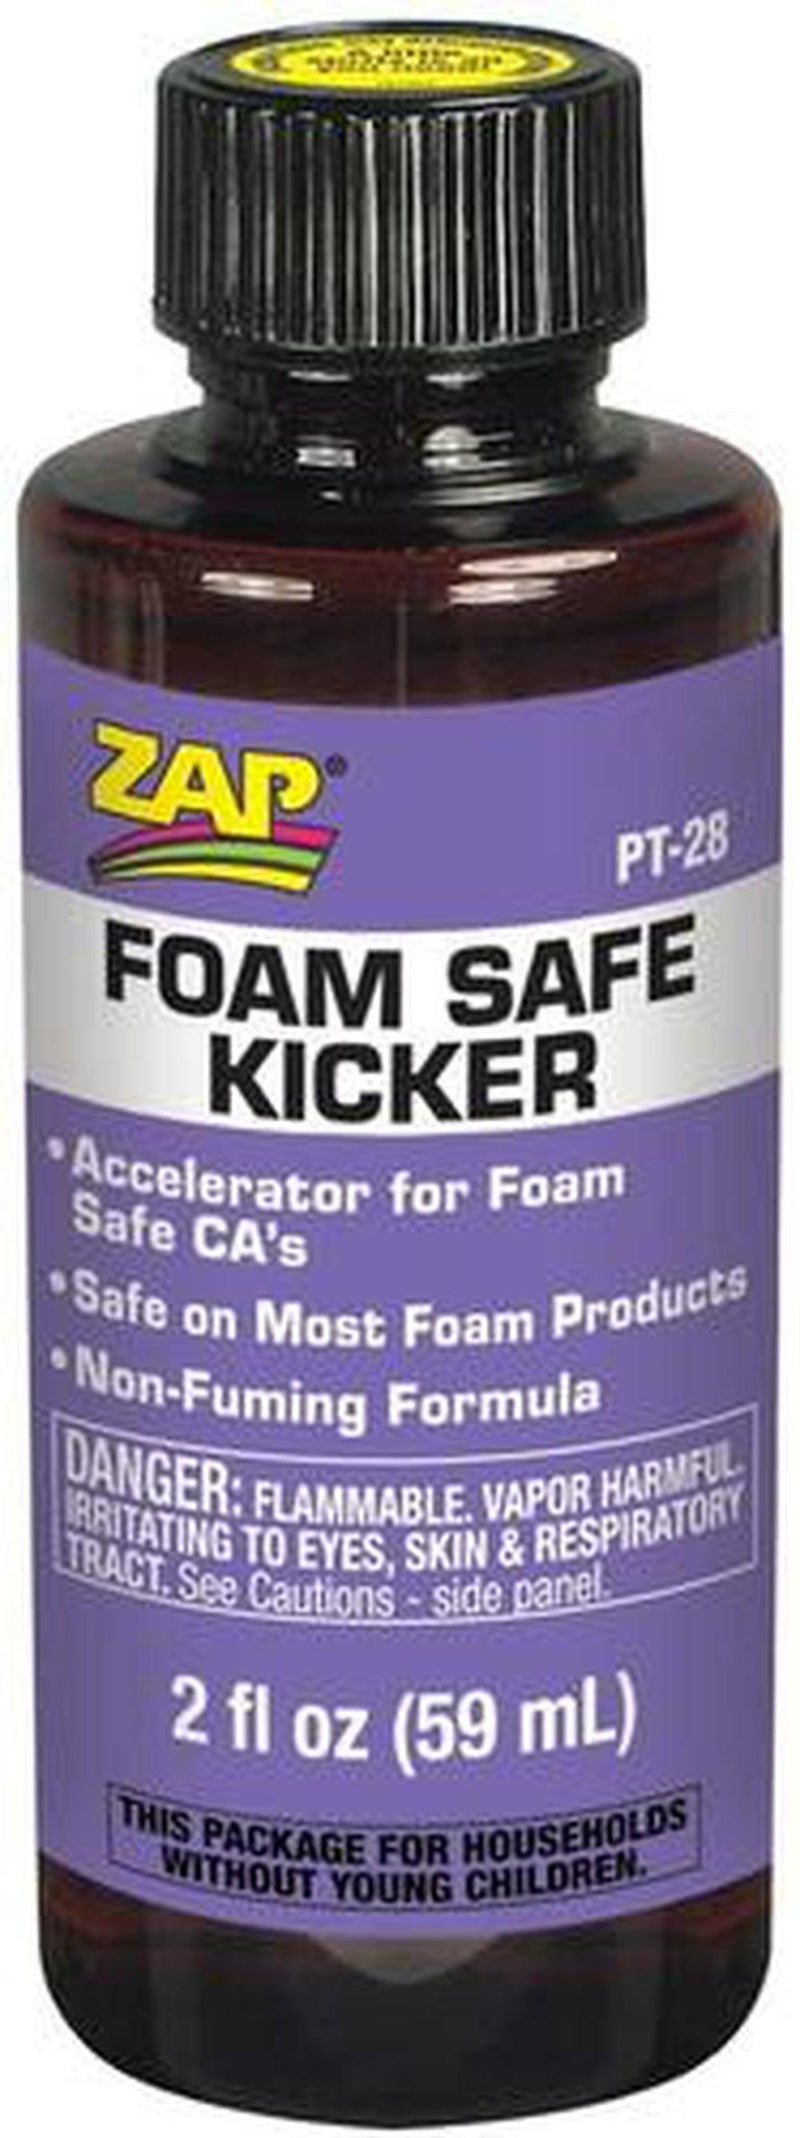 ZAP Foam Safe Kicker